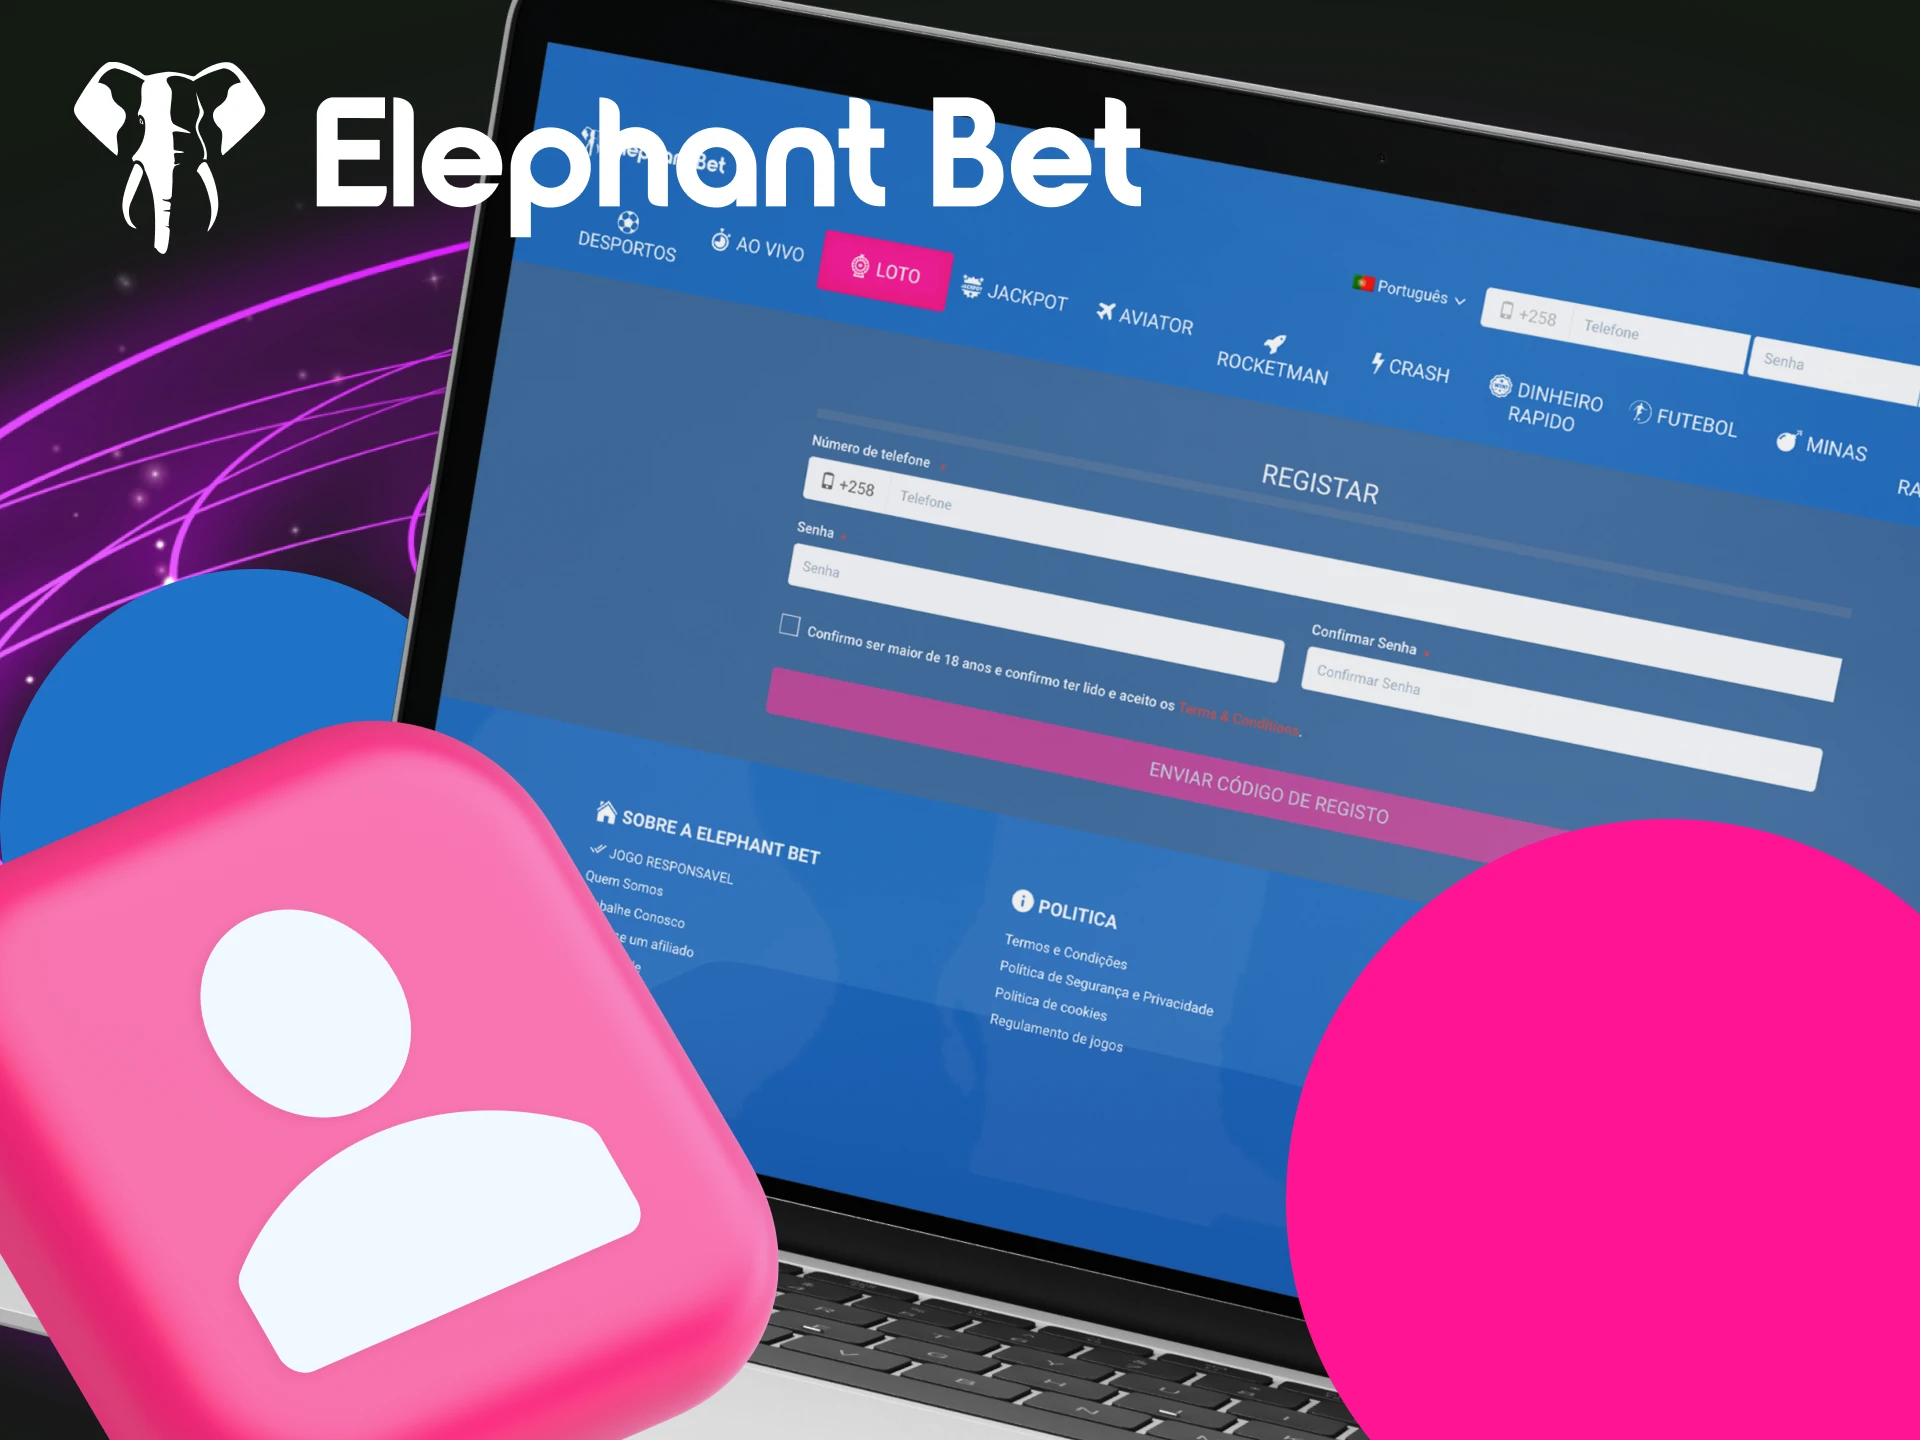 Instruções sobre como se registrar no site do cassino online Elephant Bet.